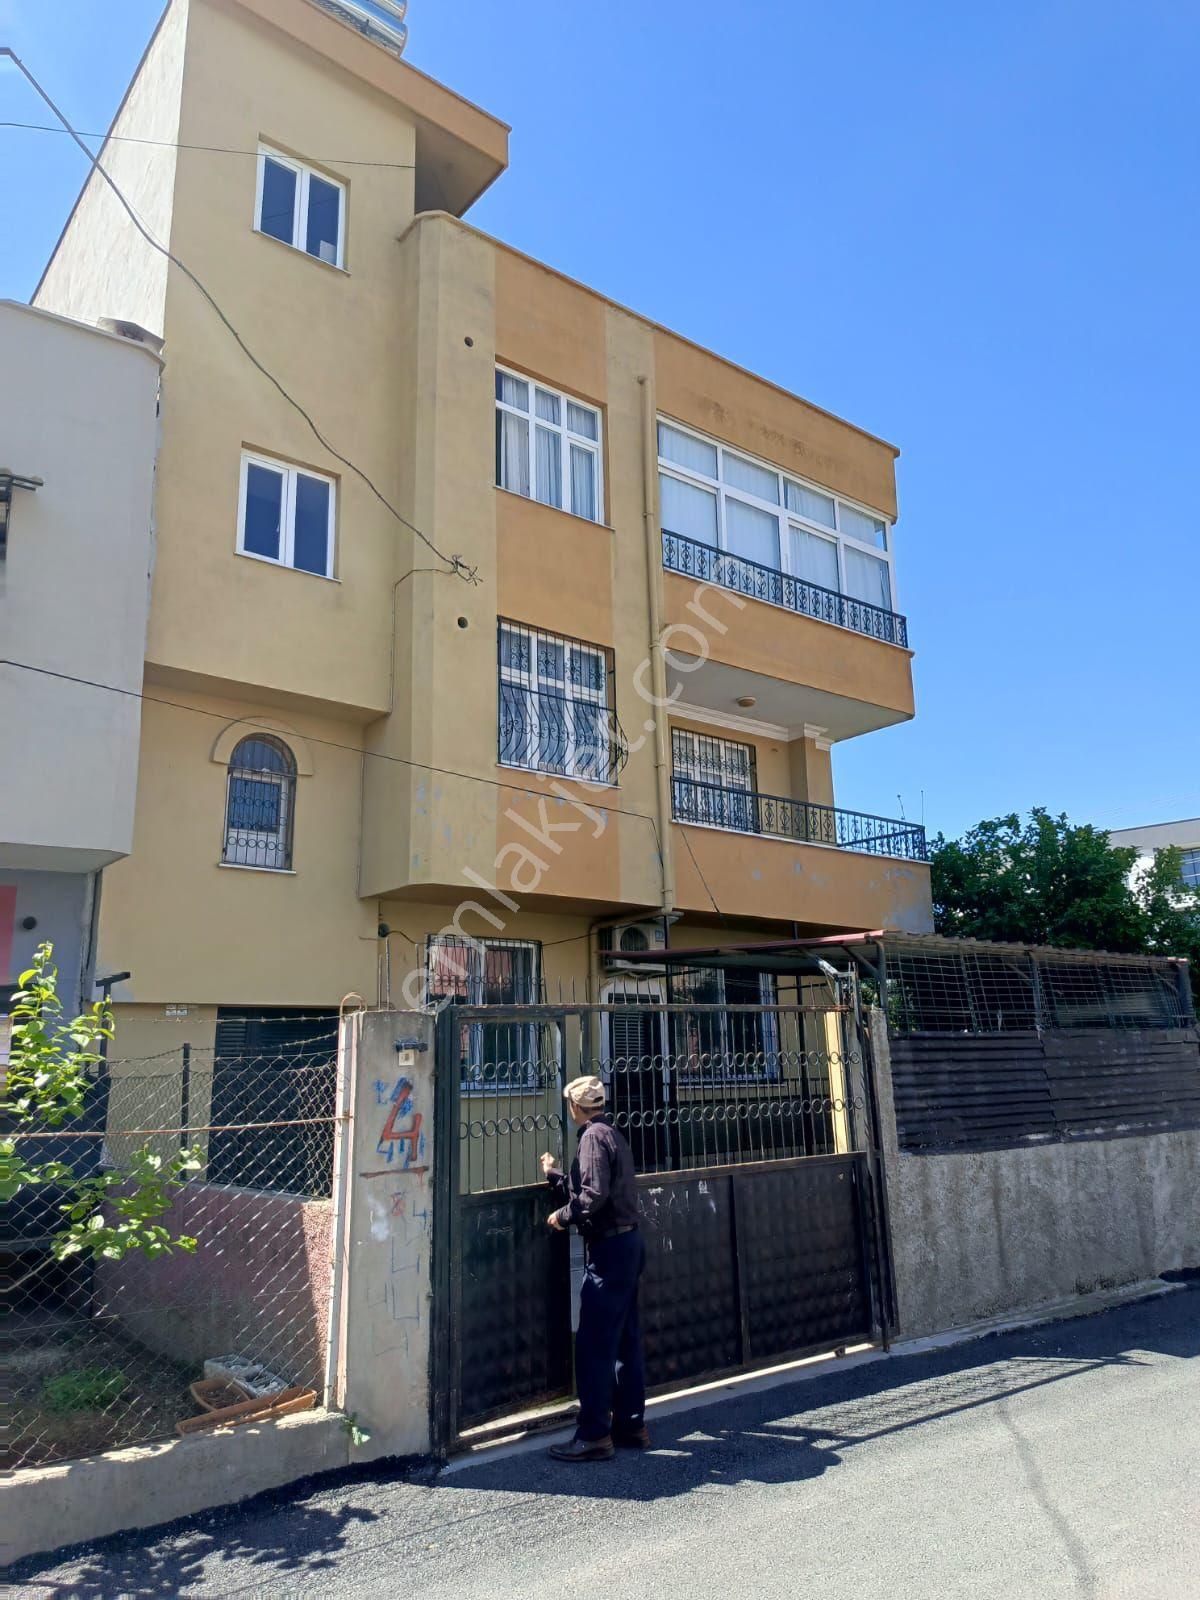 Seyhan Gürselpaşa Satılık Müstakil Ev Aliye İzzet begoviç bulvarına yakın 3 katlı satılık müstakil ev 